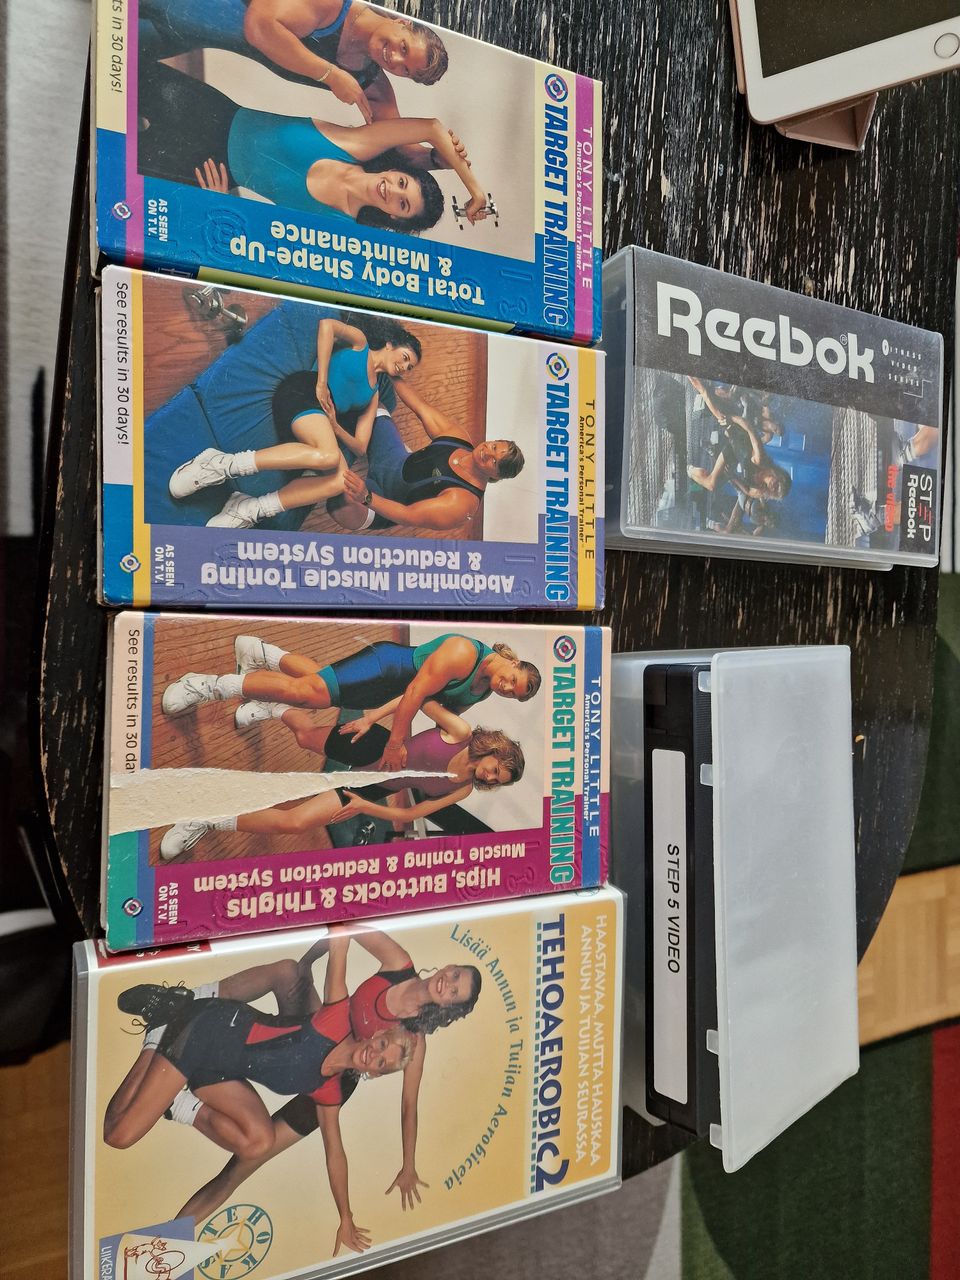 VHS 6kpl kuntoilu kasetteja koko kroppa kuntoon